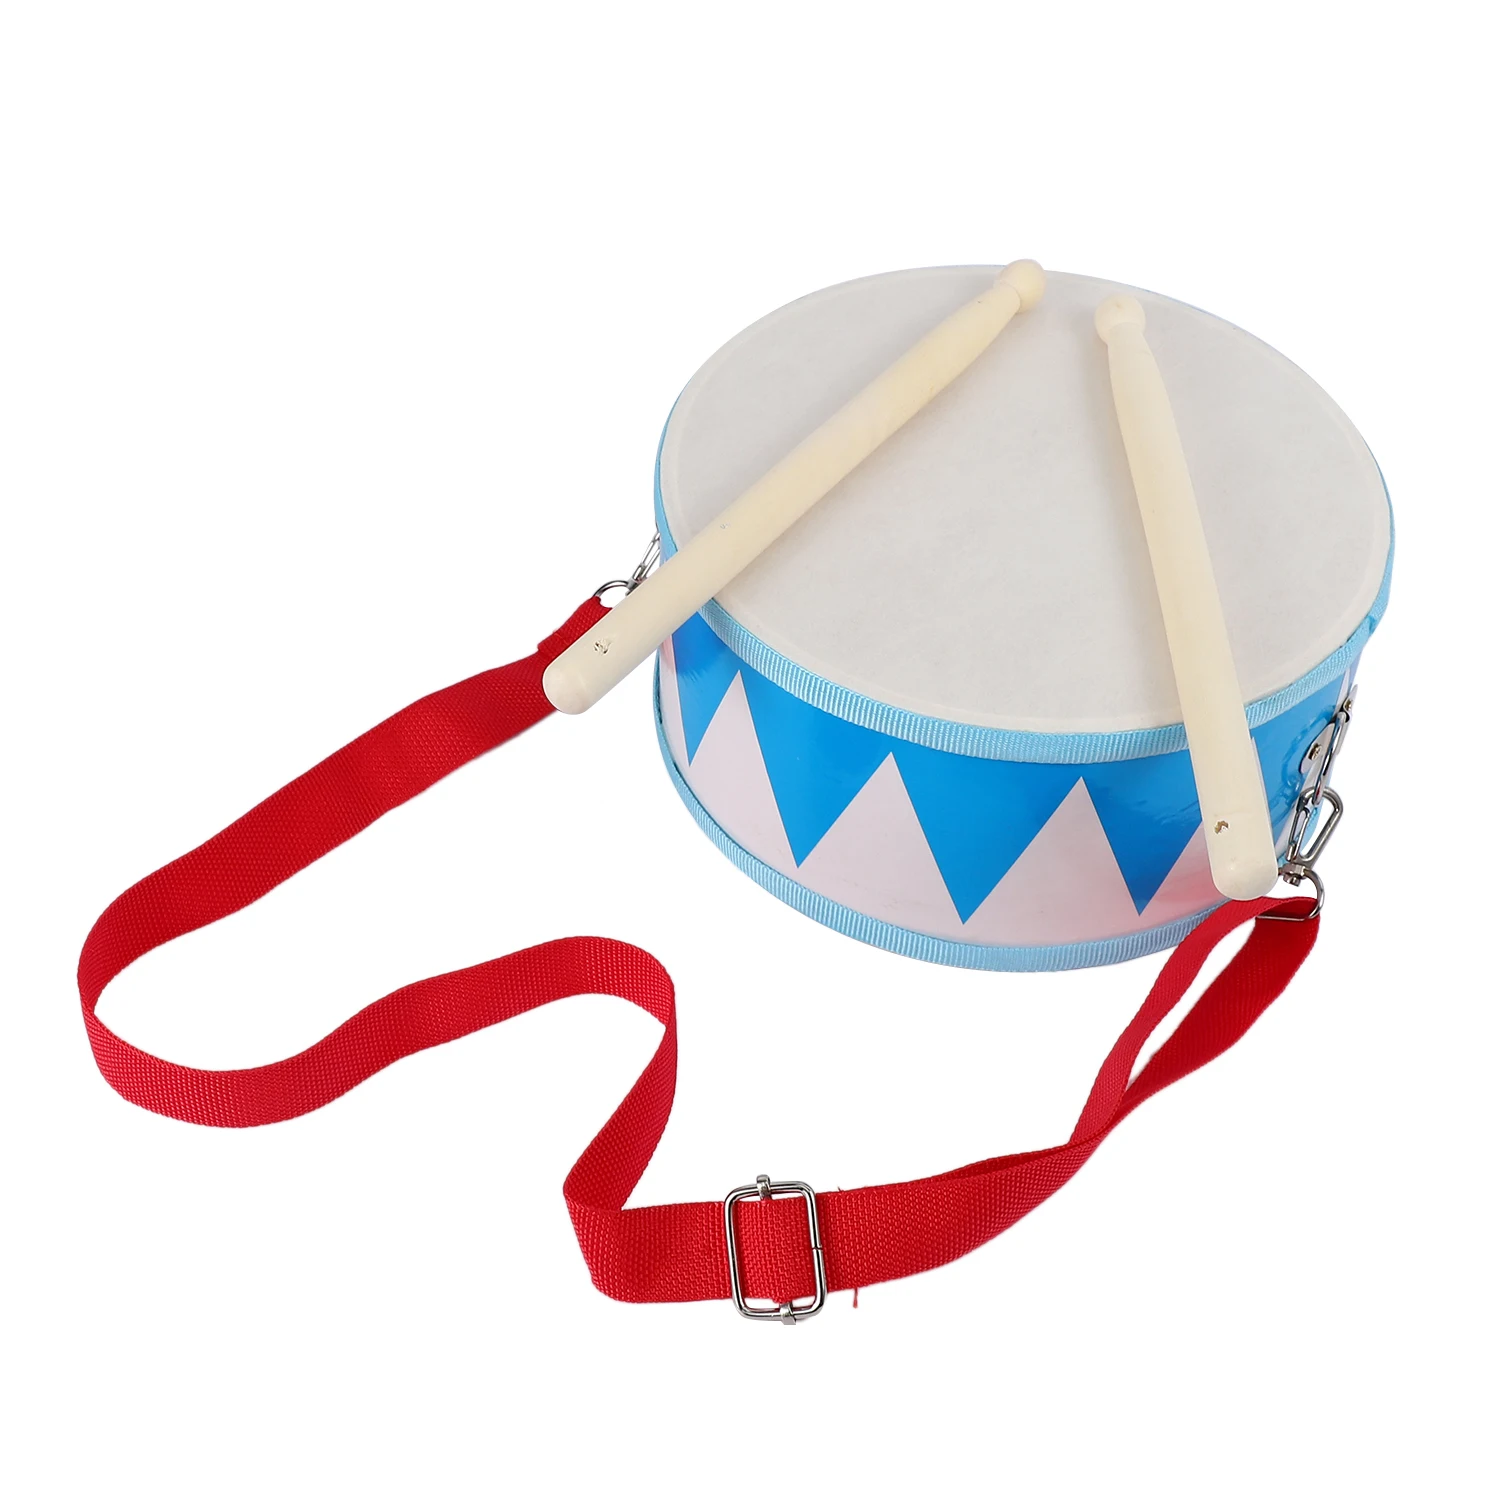 Детский барабан, деревянная игрушечная ударная установка с ремнем для переноски, палочка для малышей, подарок для развития чувства ритма у детей